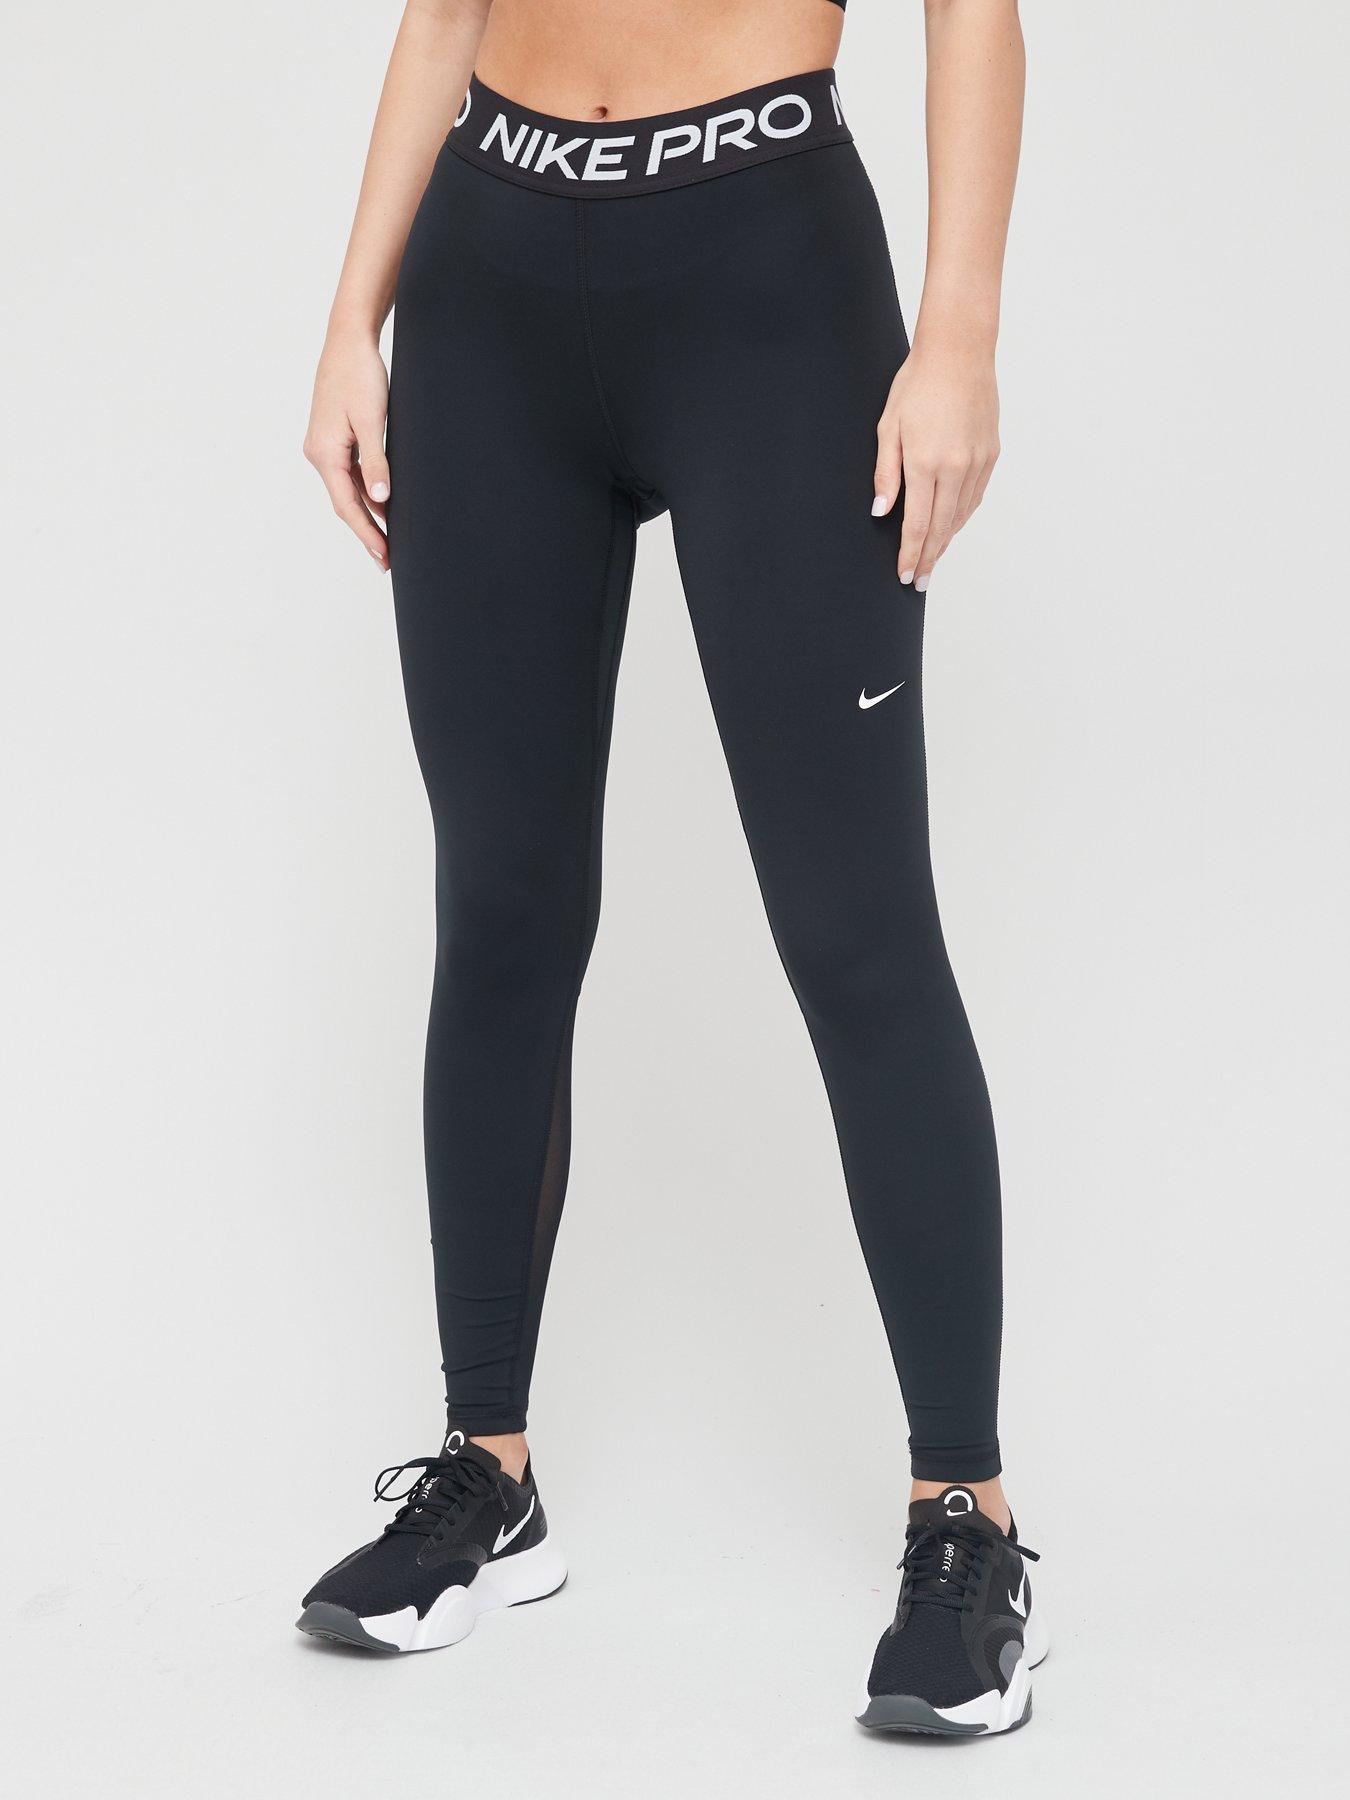 Tights & leggings, Sportswear, Women, Nike